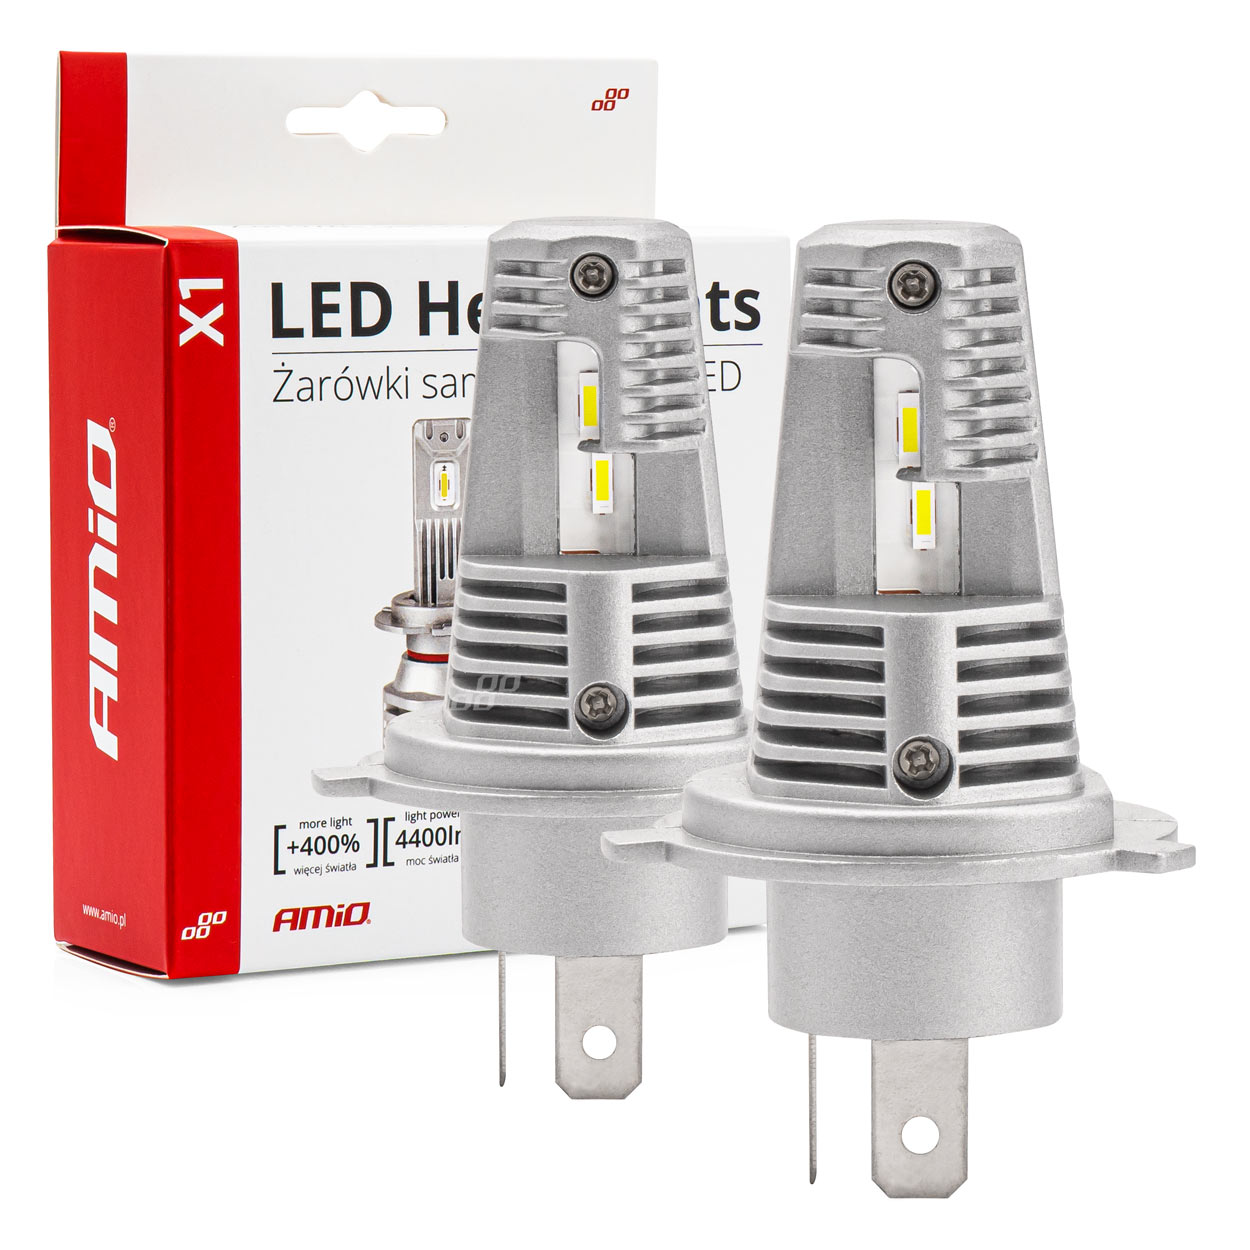 LED žárovky hlavního svícení X1 Series H4 AMiO